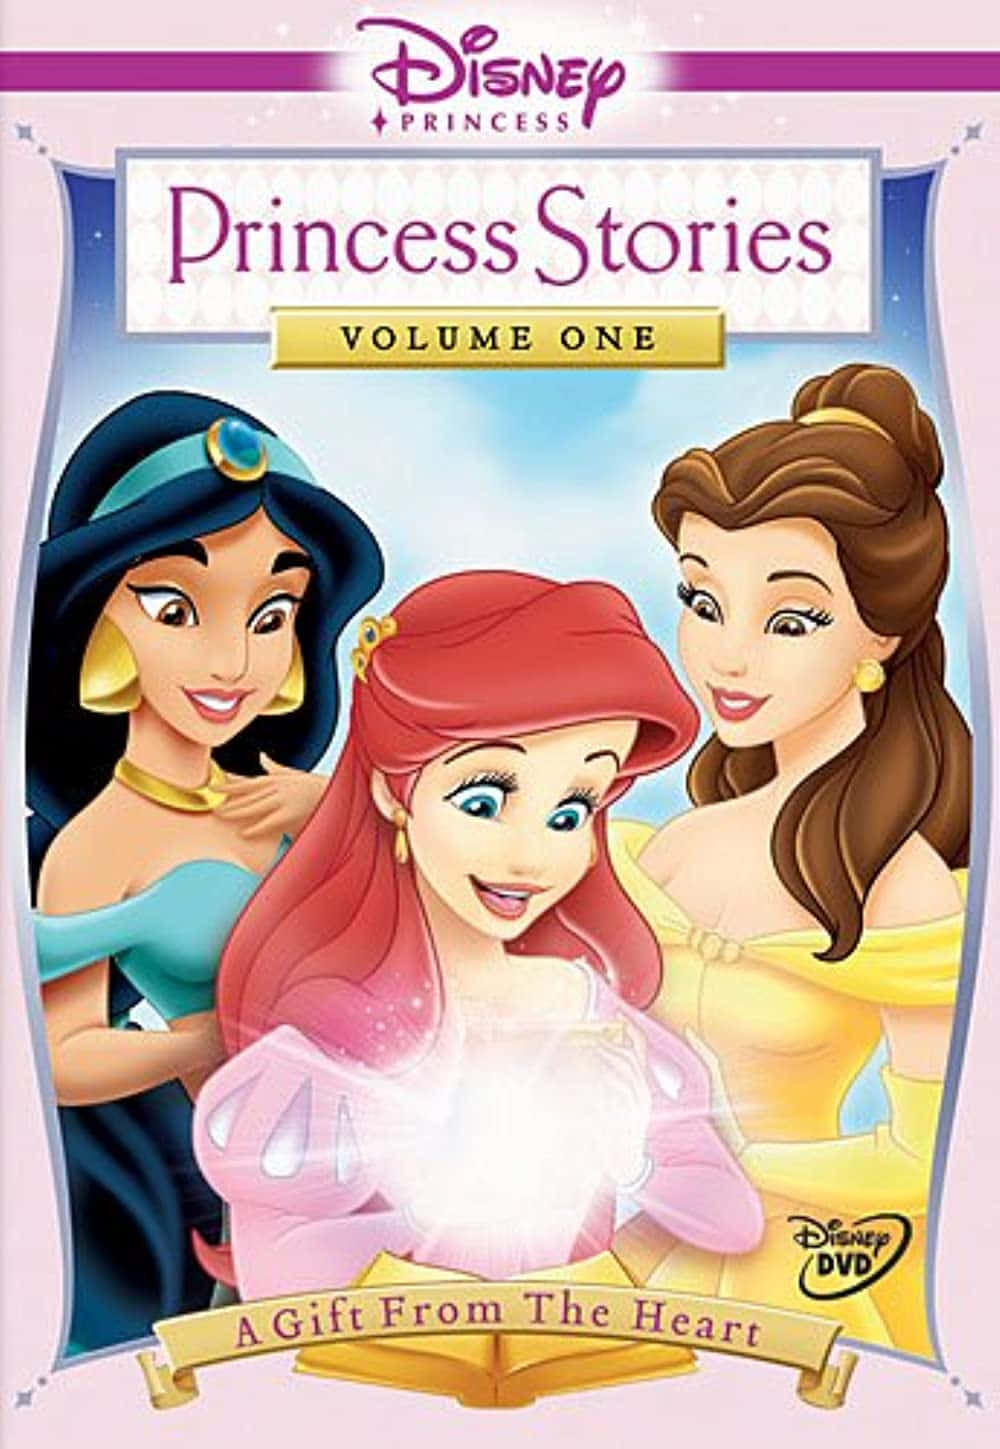 Disney Prinsessebilleder forbliver på skærmen